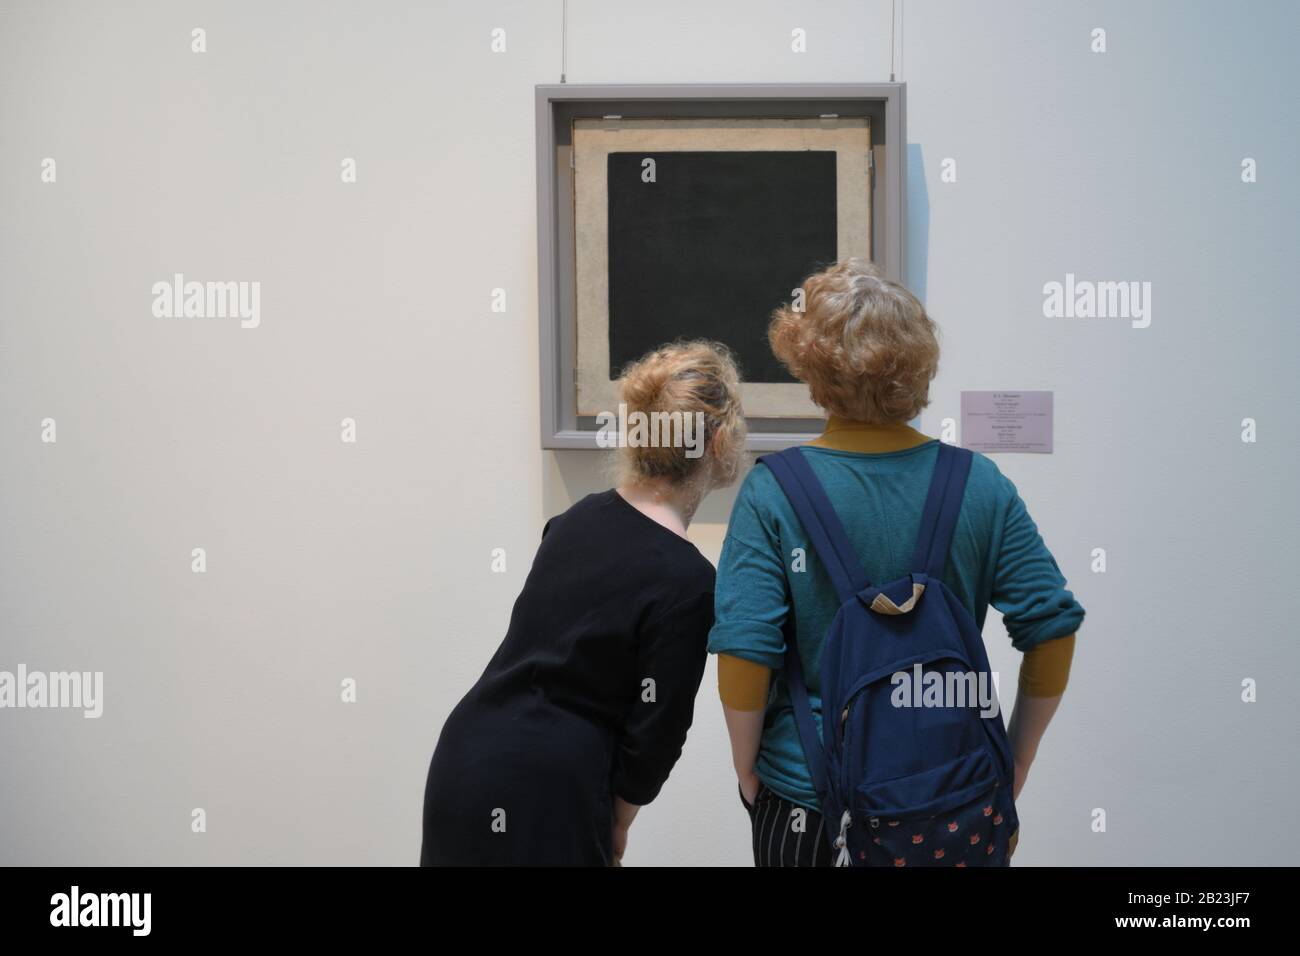 Menschen im Gebäude des Generalstabs der Staatlichen Eremitage Museum in der Nähe ikonischen Kasimir Malewitsch Malerei Schwarzes Quadrat. Stockfoto